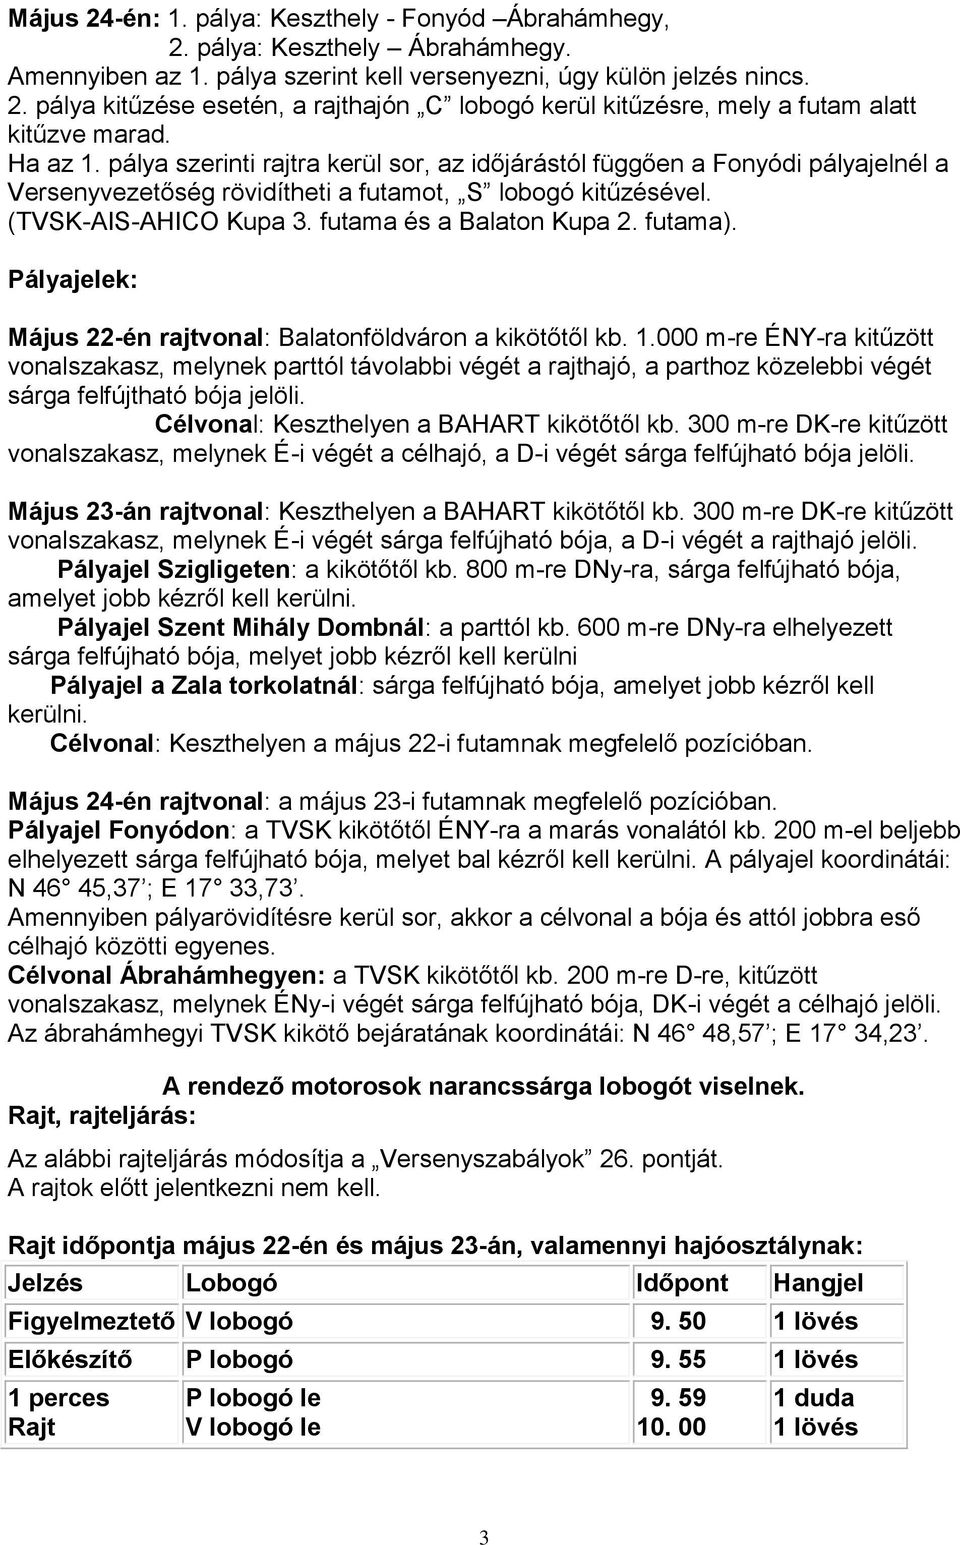 futama és a Balaton Kupa 2. futama). Pályajelek: Május 22-én rajtvonal: Balatonföldváron a kikötőtől kb. 1.